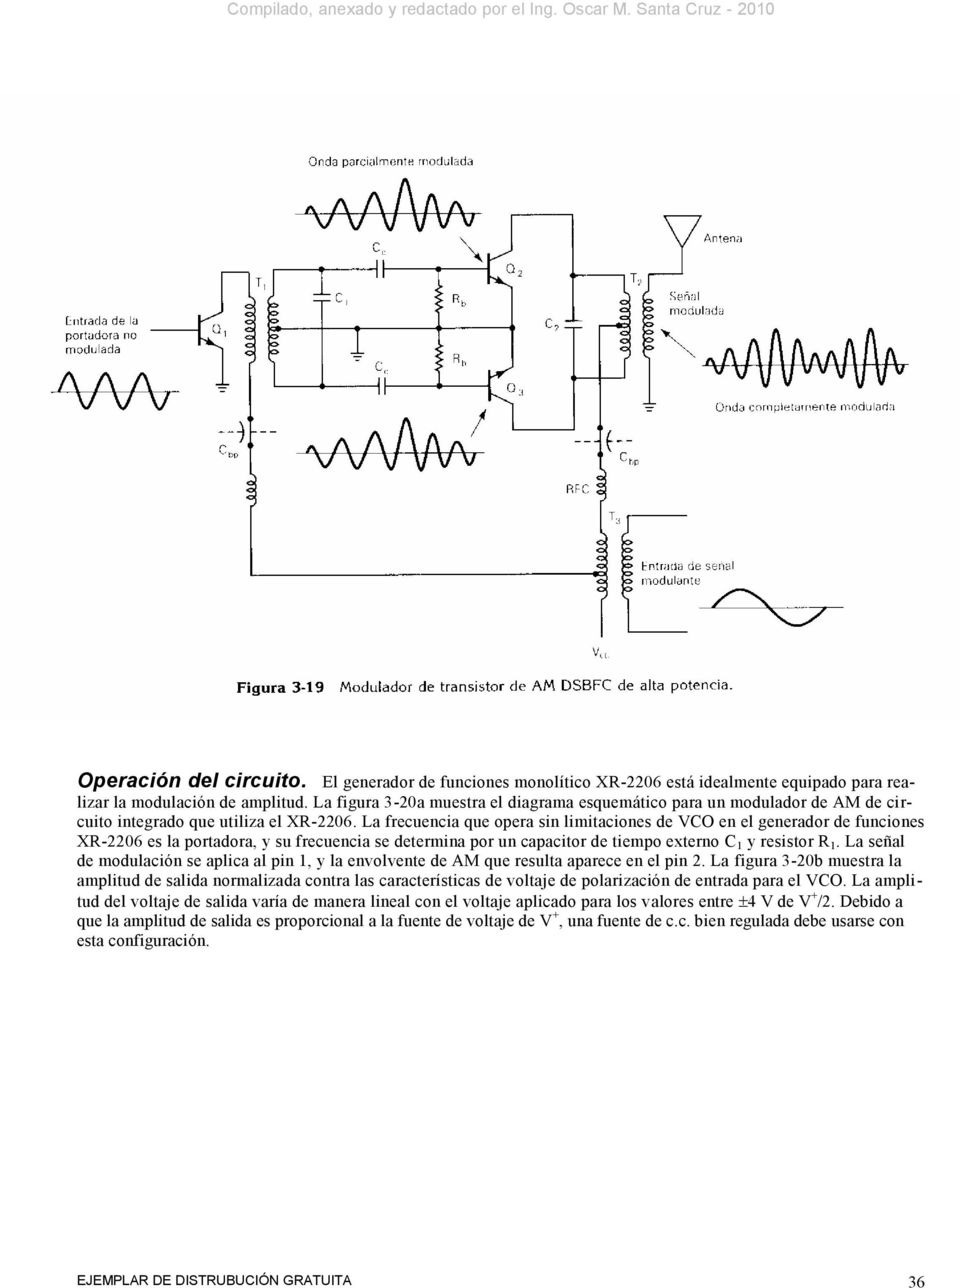 La frecuencia que opera sin limitaciones de VCO en el generador de funciones XR-06 es la portadora, y su frecuencia se determina por un capacitor de tiempo externo C 1 y resistor R 1.